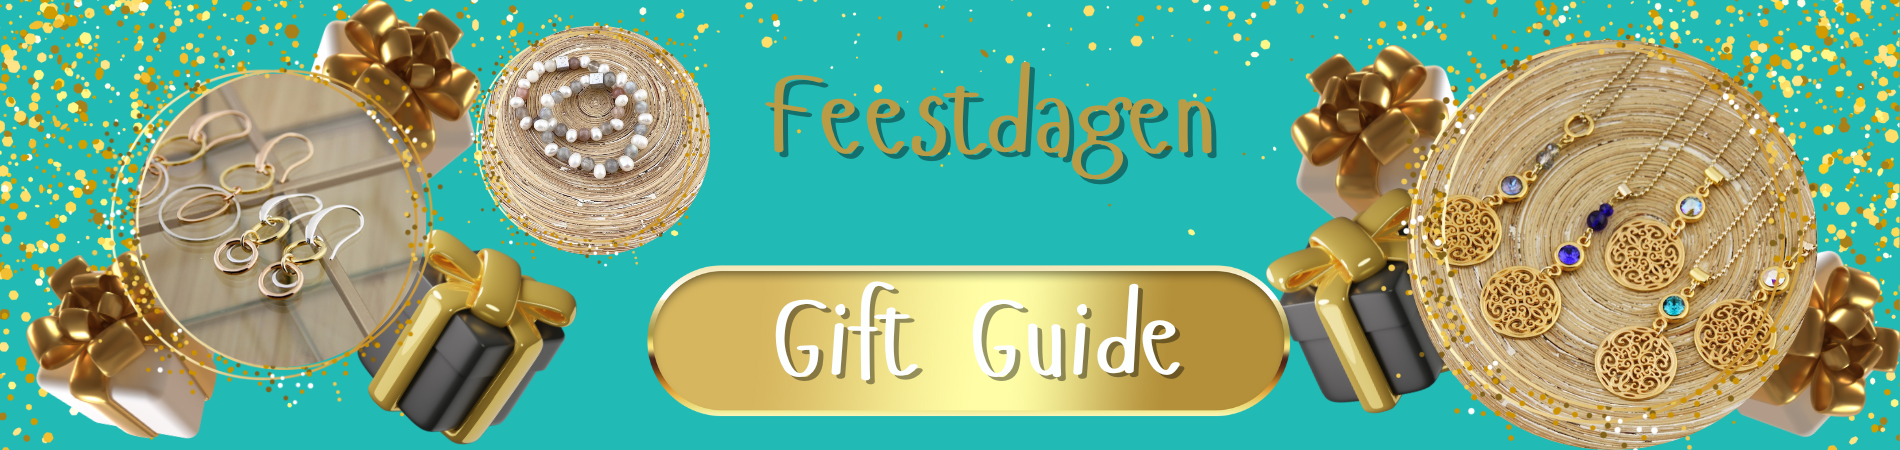 Feestdagen Gift Guide van HanneHaves